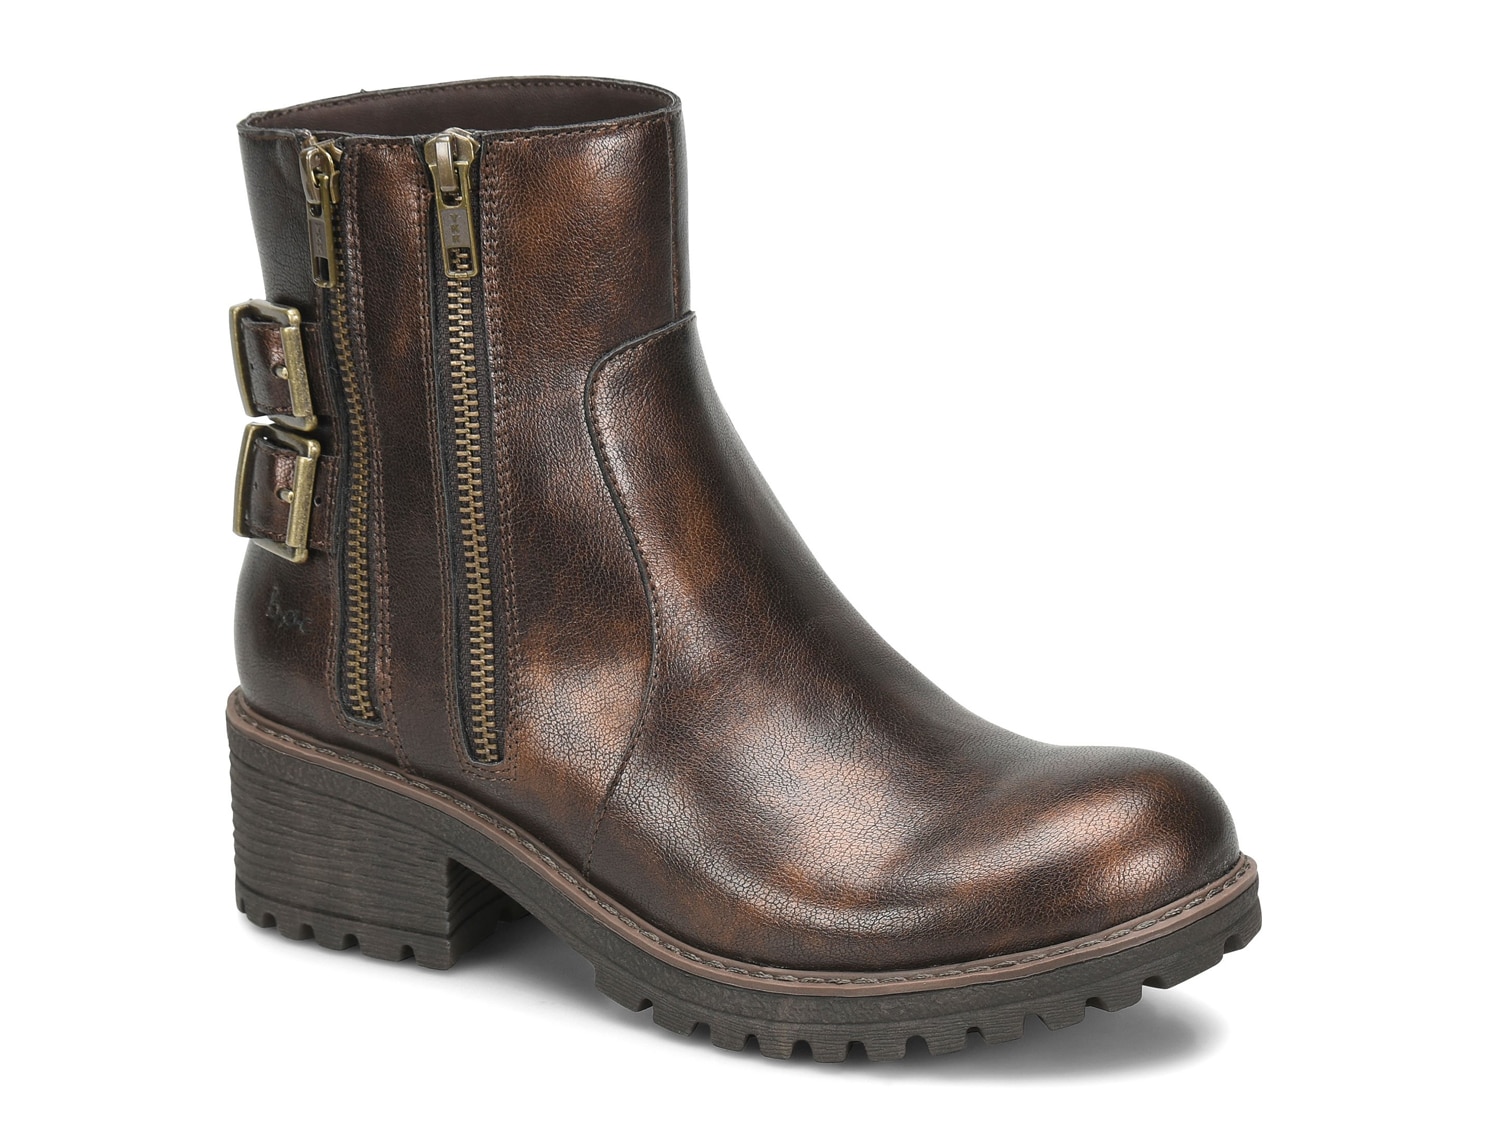 cheap timberland boots online